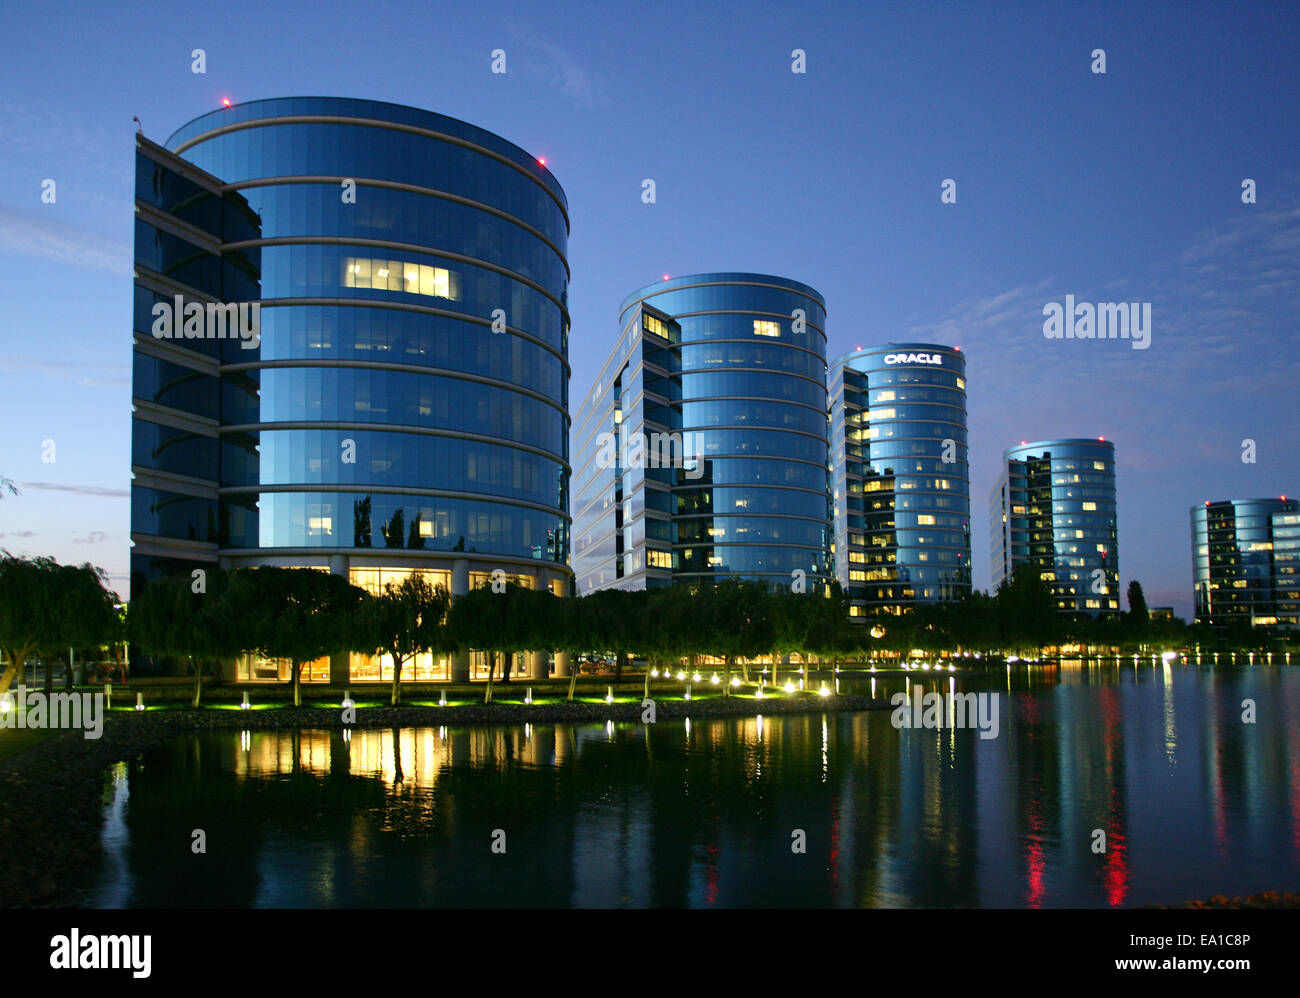 Oracle-Hauptsitz in Redwood Shores in der Nähe von San Francisco, Kalifornien, USA Stockfoto